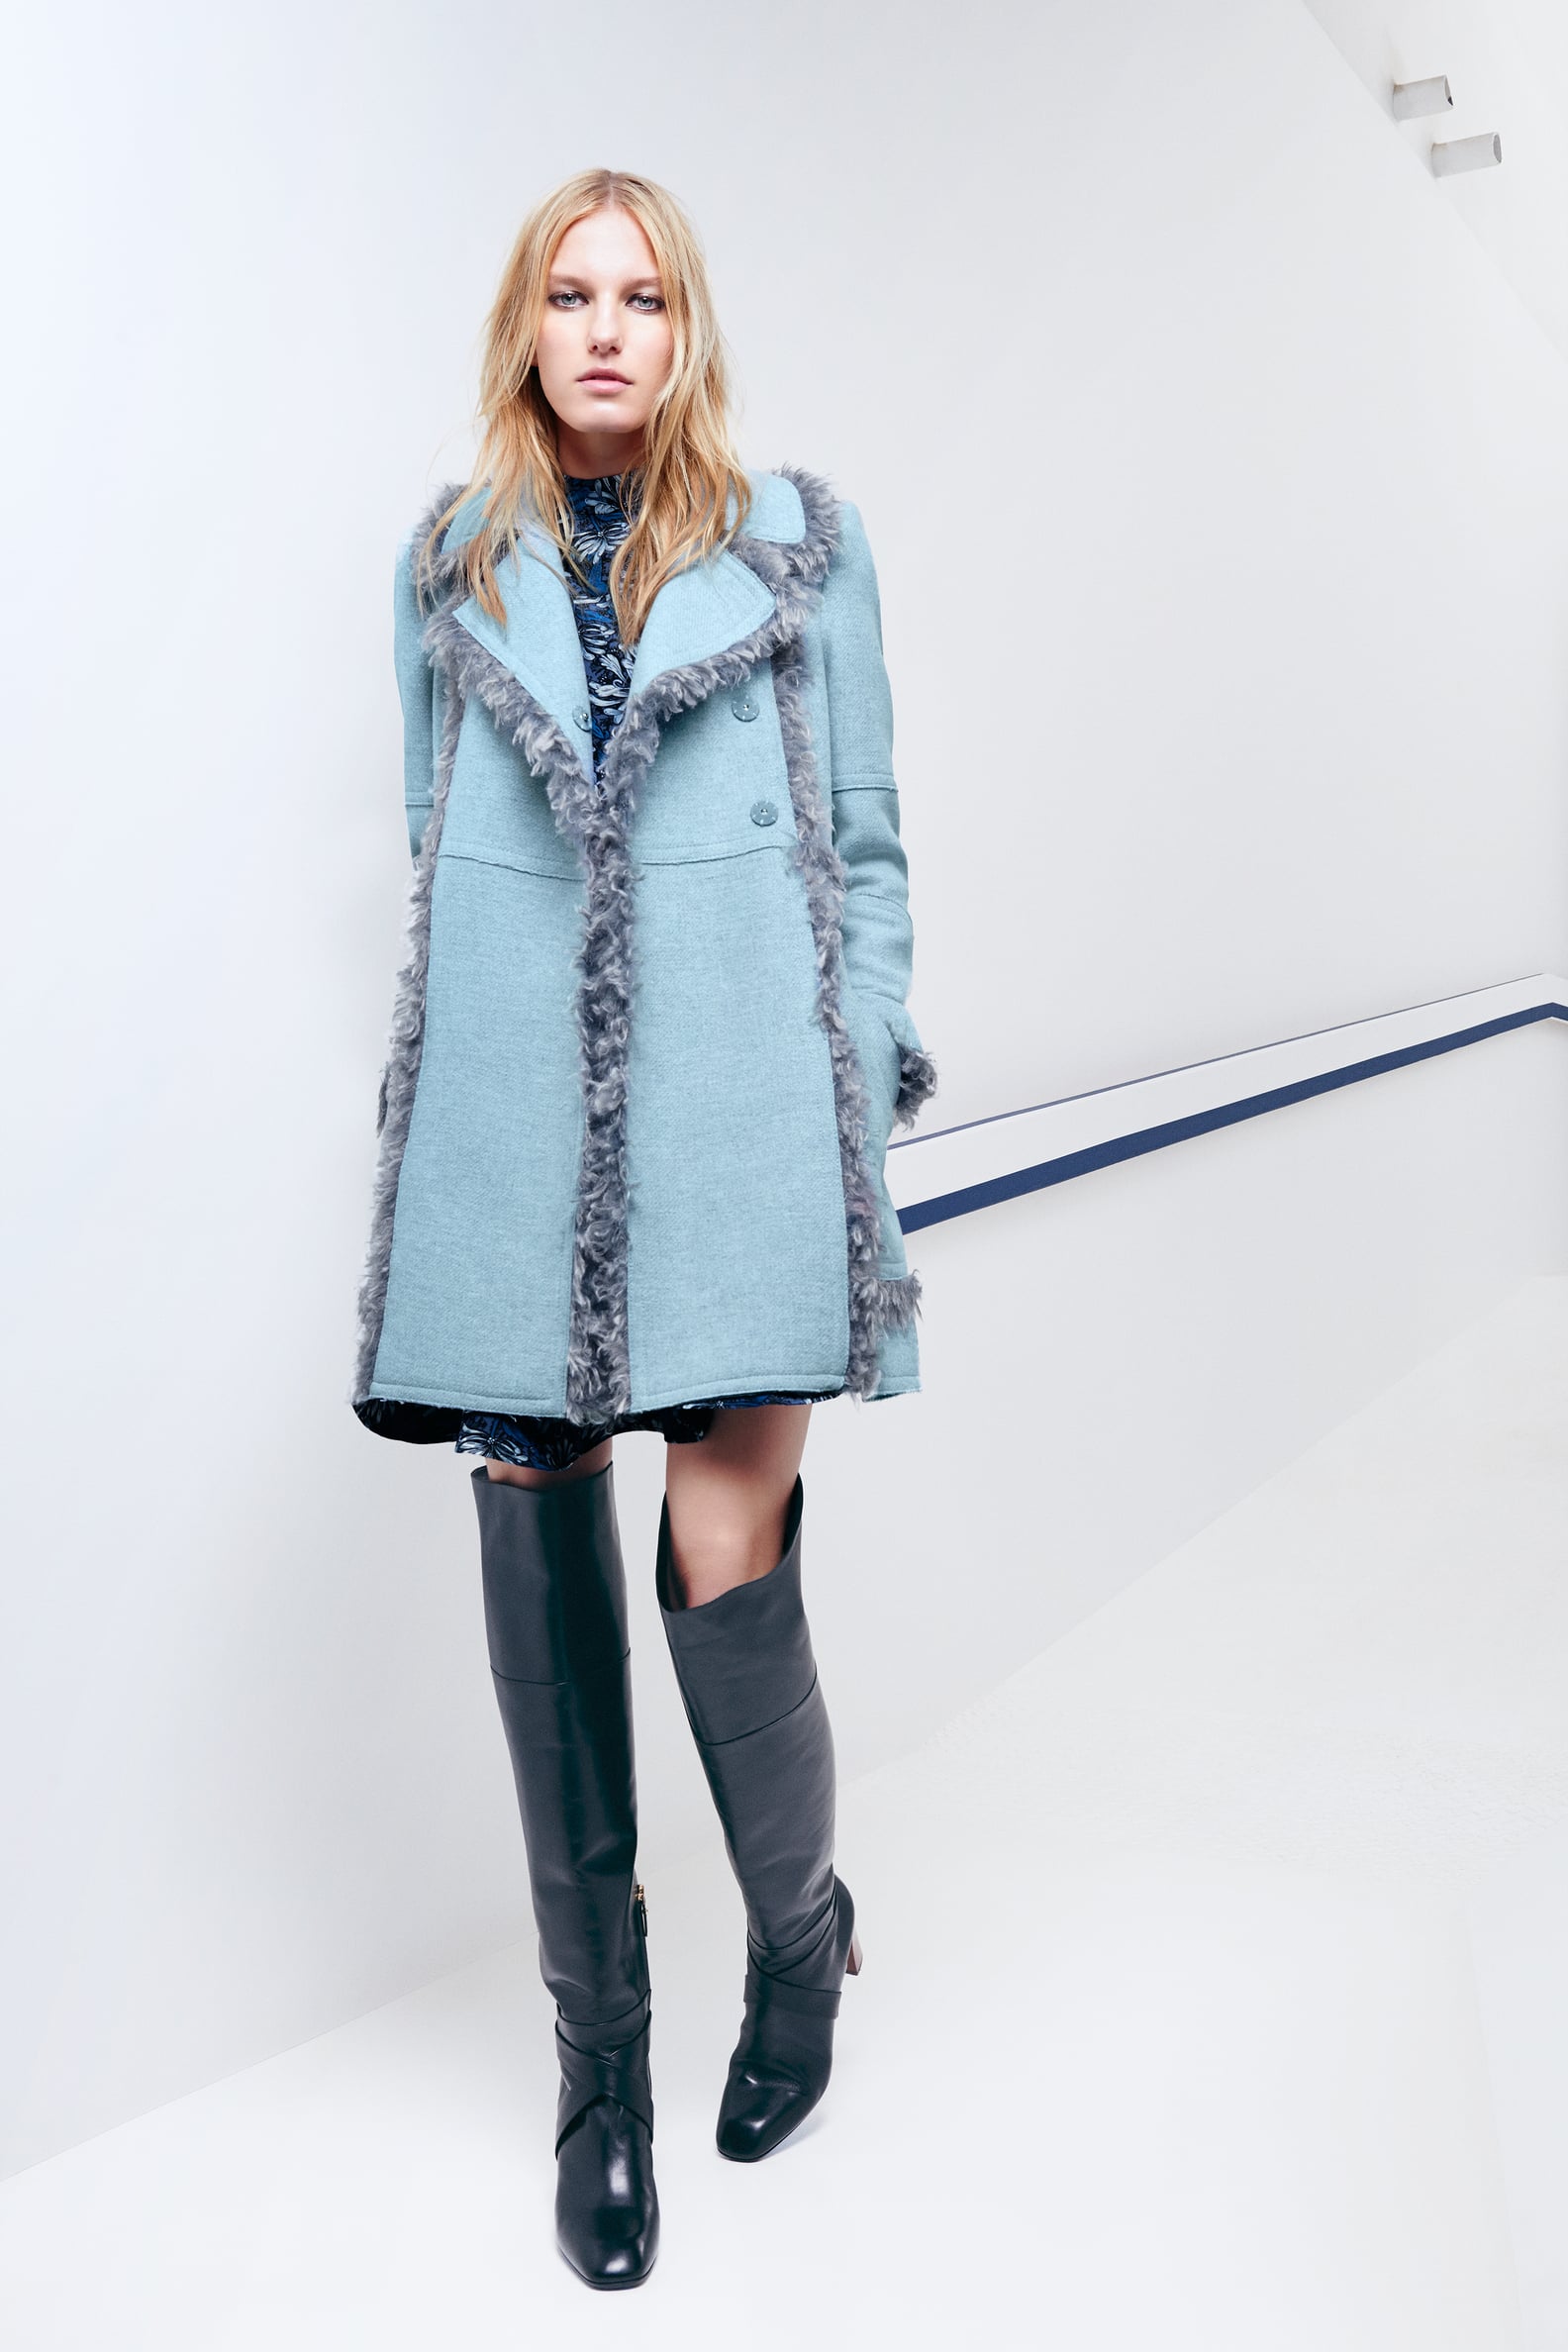 Fall 2015 Trends at New York Fashion Week | POPSUGAR Fashion